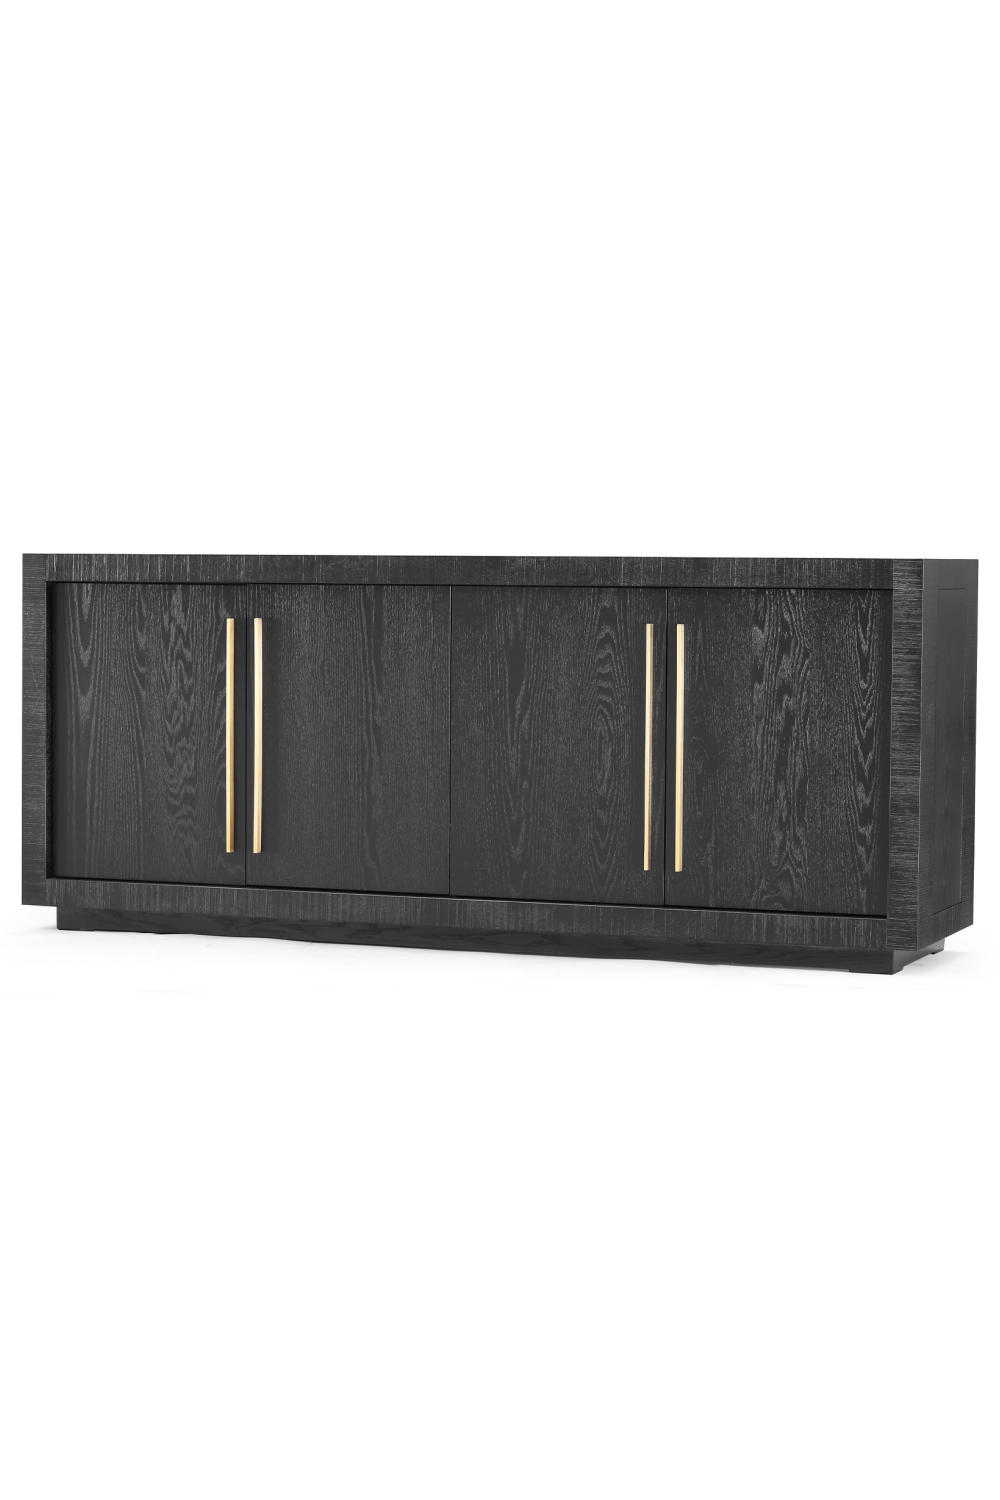 Black 4-Door Wooden Sideboard | Liang & Eimil Kent | Oroa.com